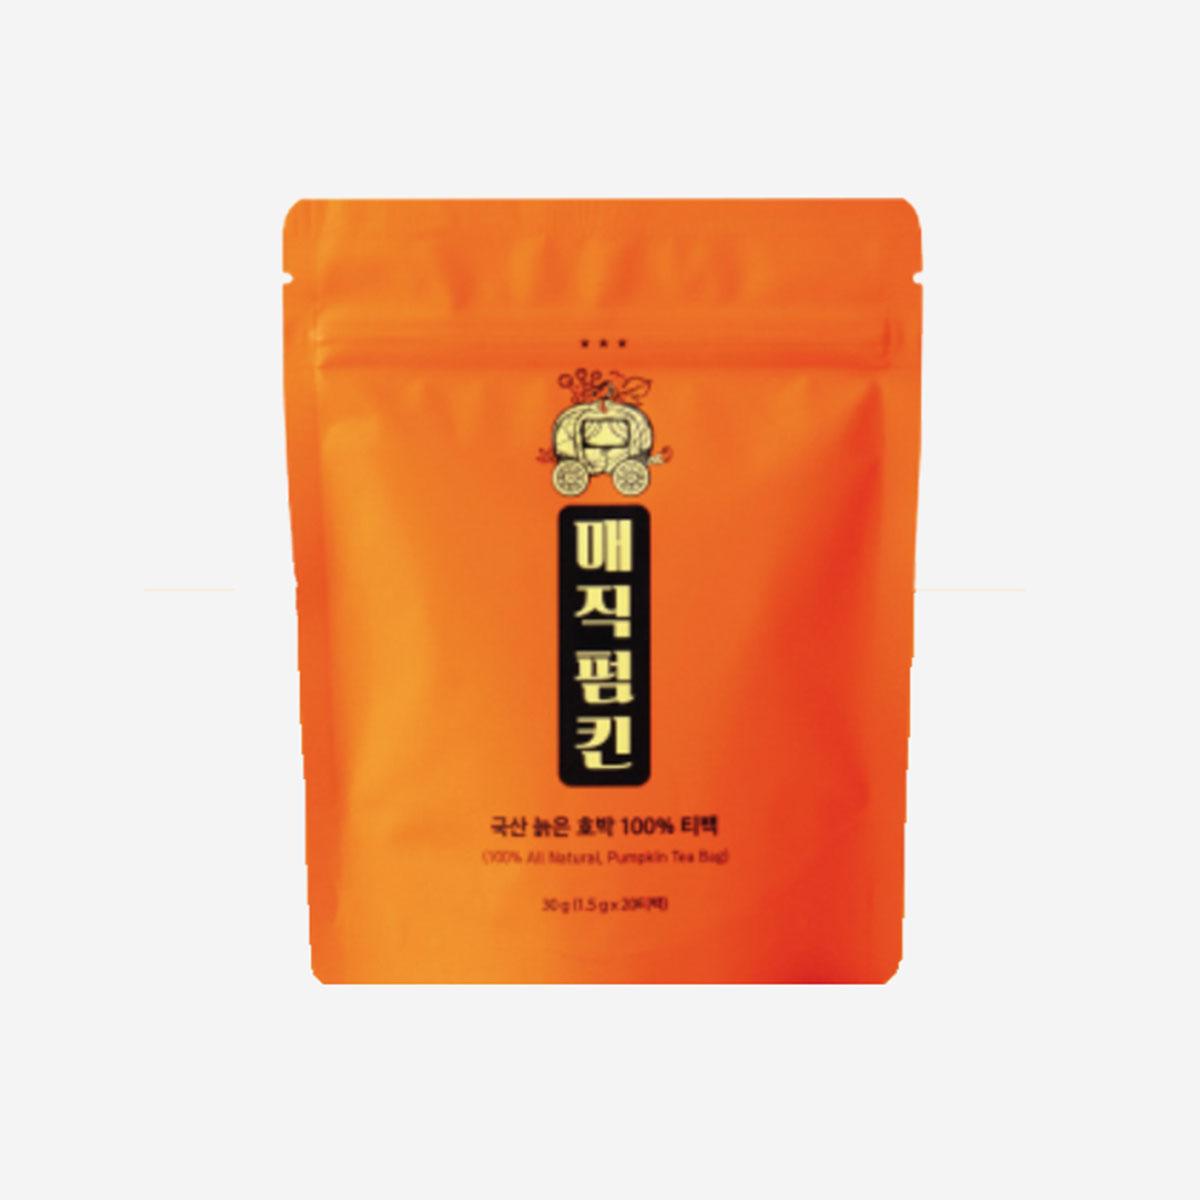 Trà bí đỏ Hàn Quốc (20 gói)